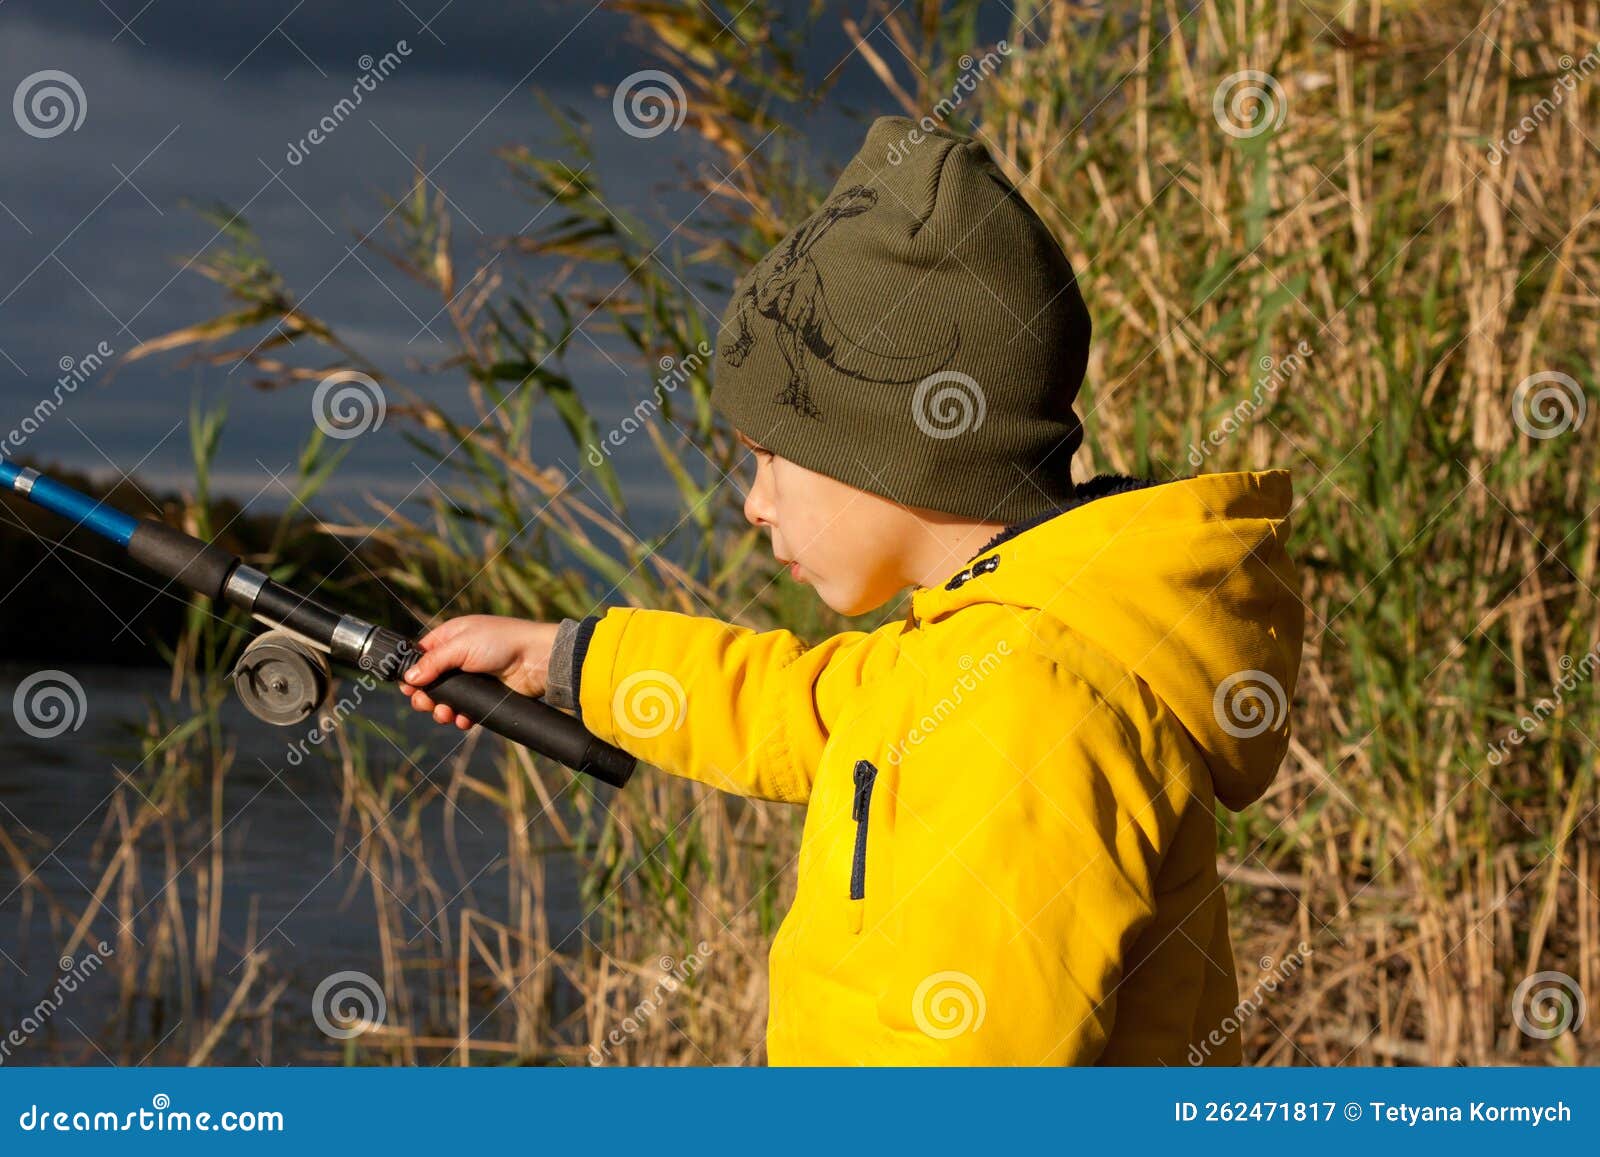 Young Fisherman. Preschooler Boy, Dressed in Yellow Jacket, is Fishing  Stock Image - Image of preschooler, portrait: 262471817